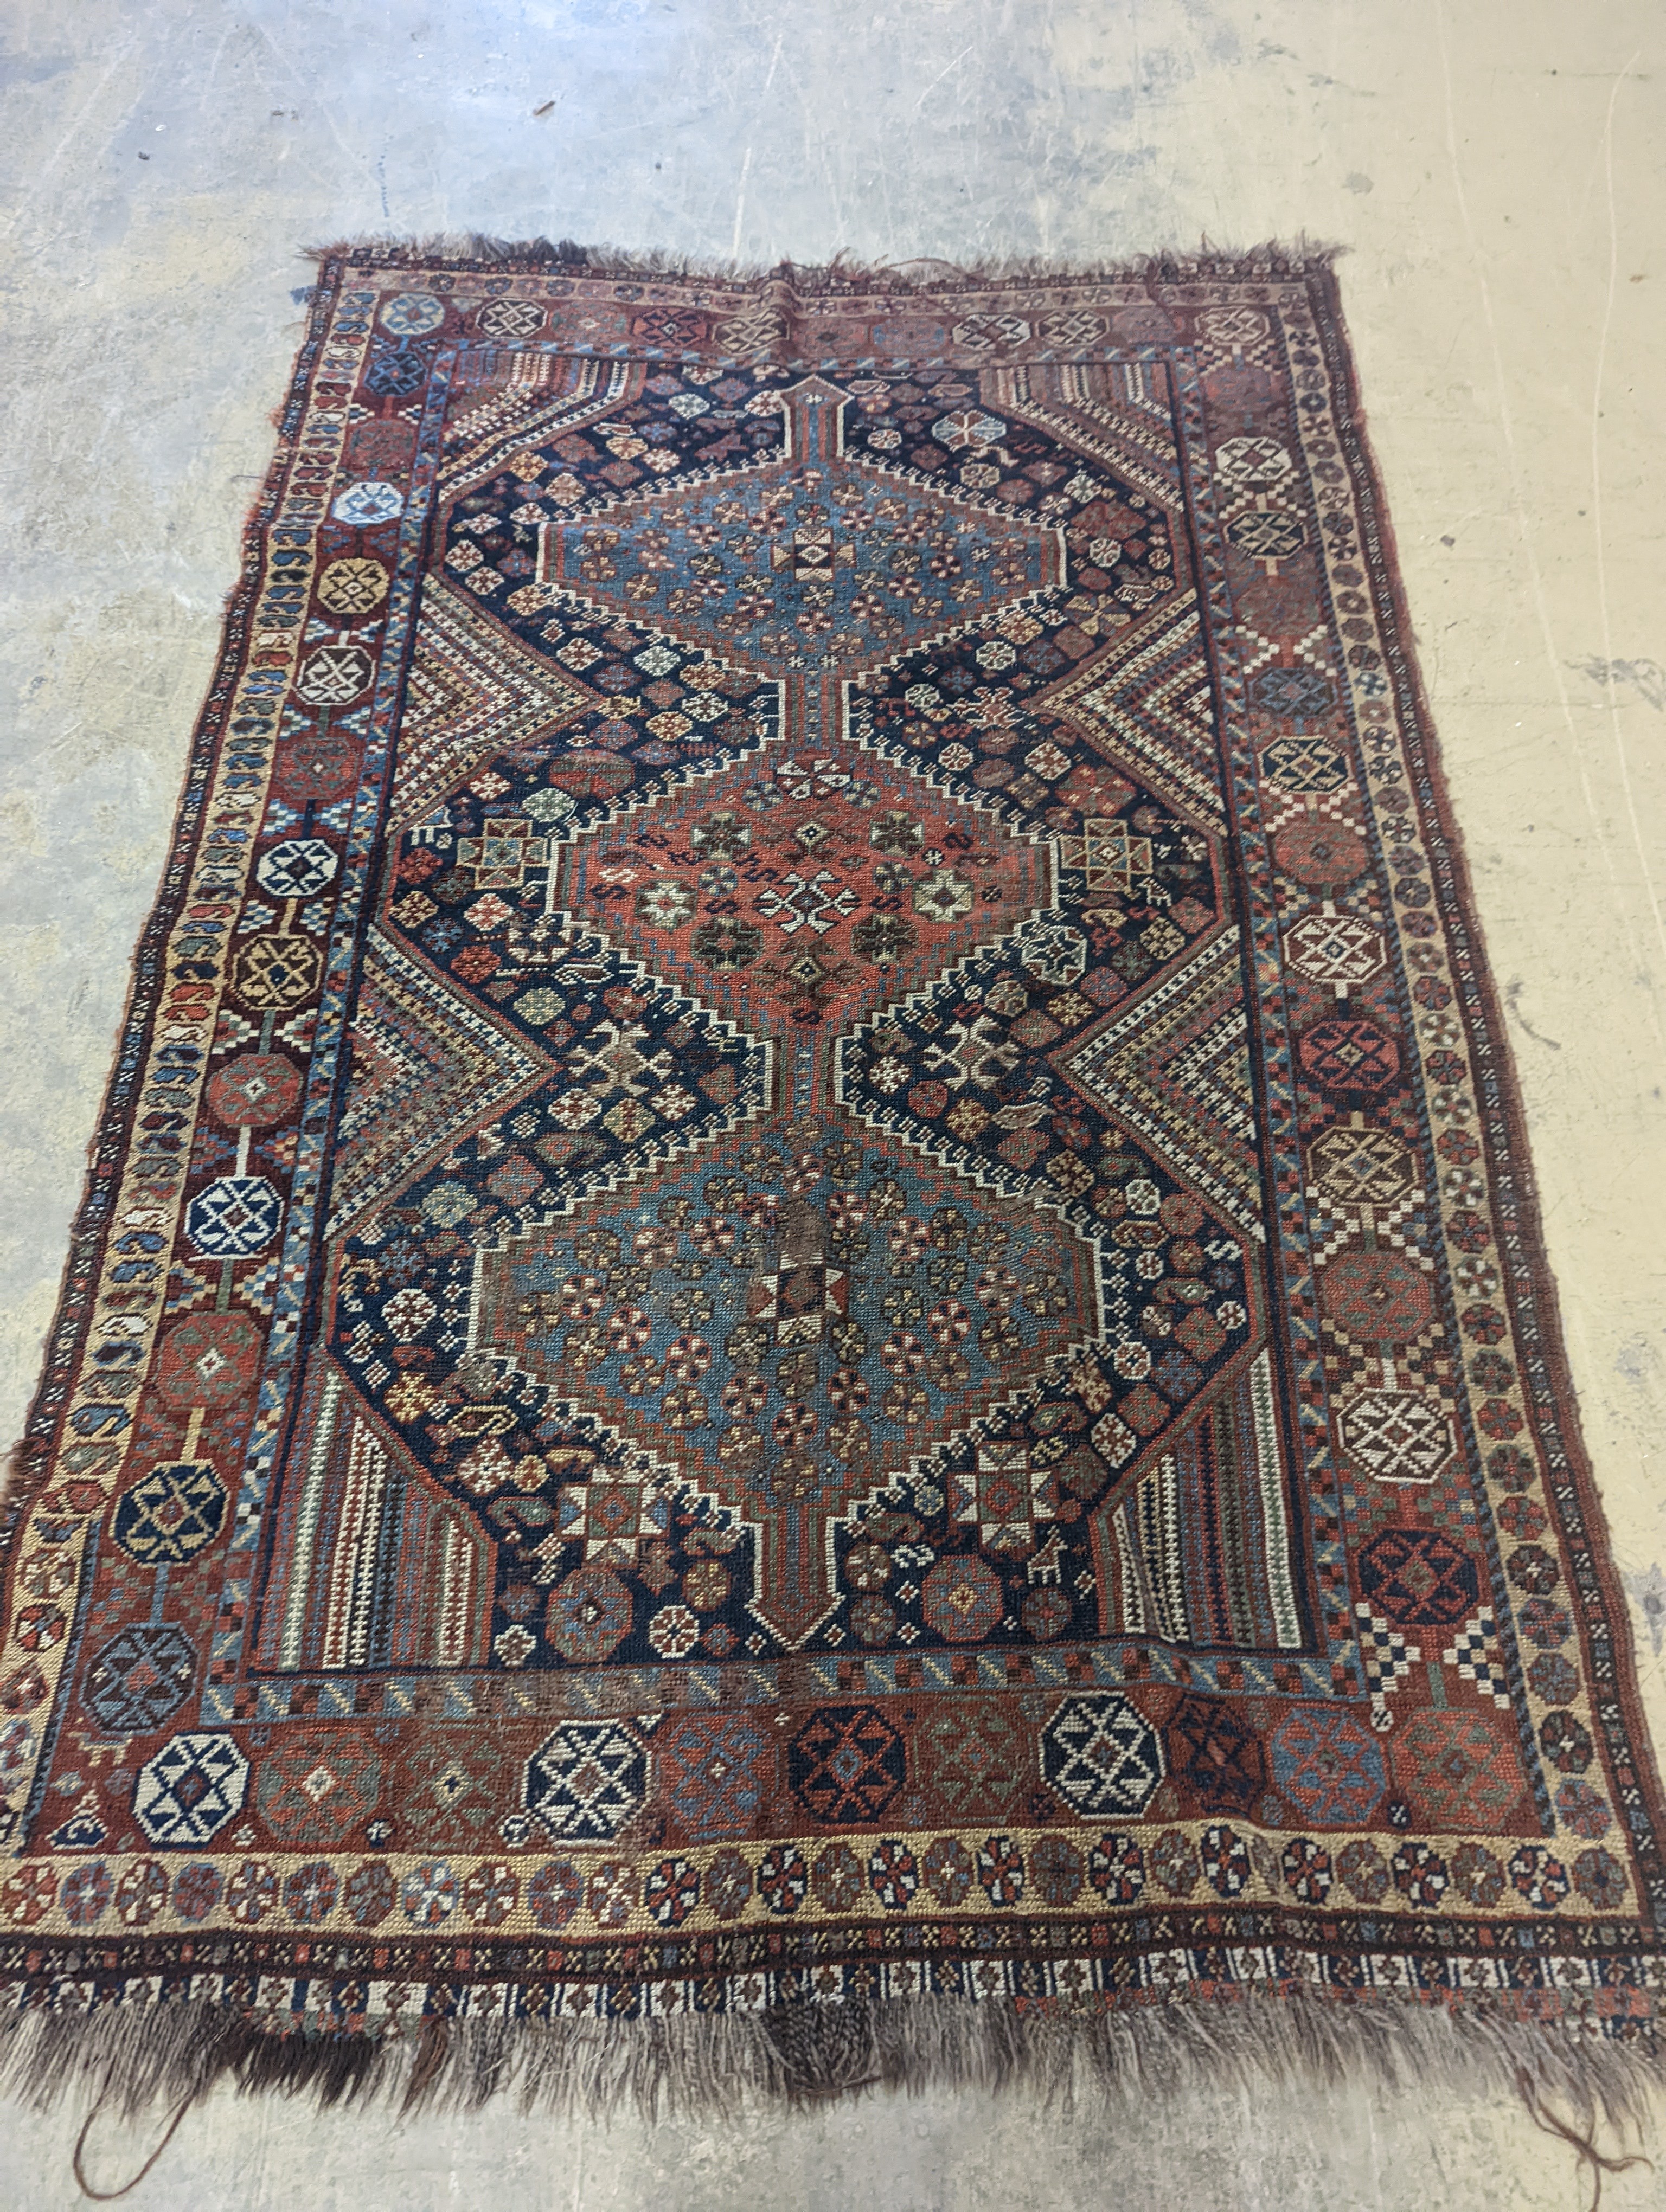 A Shiraz rug, 240 x 156cm